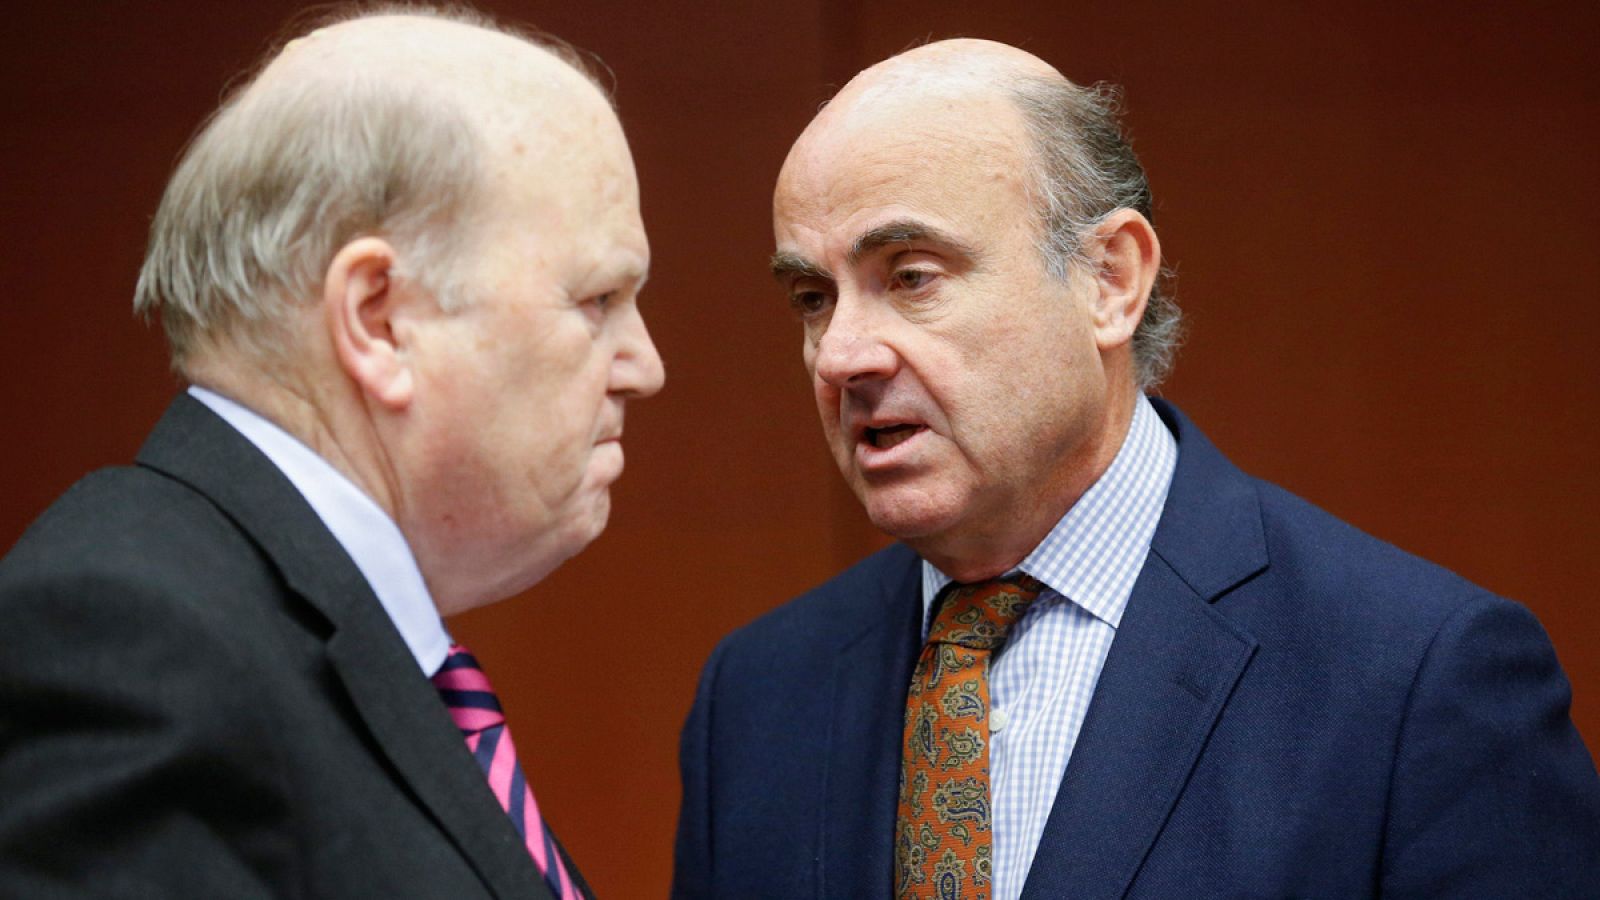 El ministro de Finanzas de Irlanda, Michael Noonan, conversa con el ministro de Economía de España, Luis de Guindos, durante la reunión del Eurogrupo